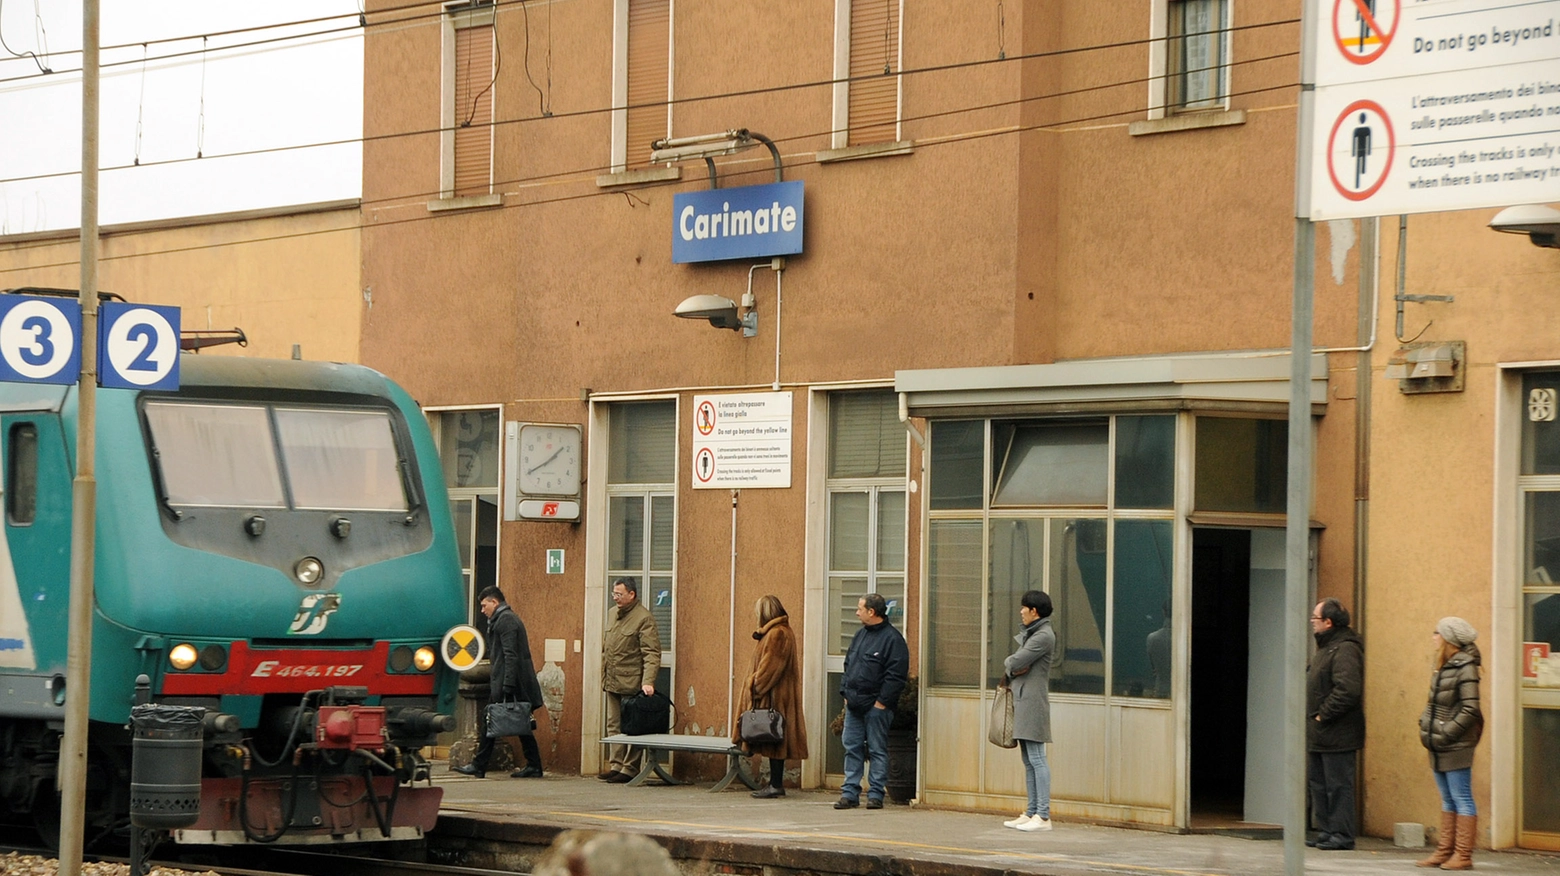 La stazione ferroviaria di Carimate (Cusa)